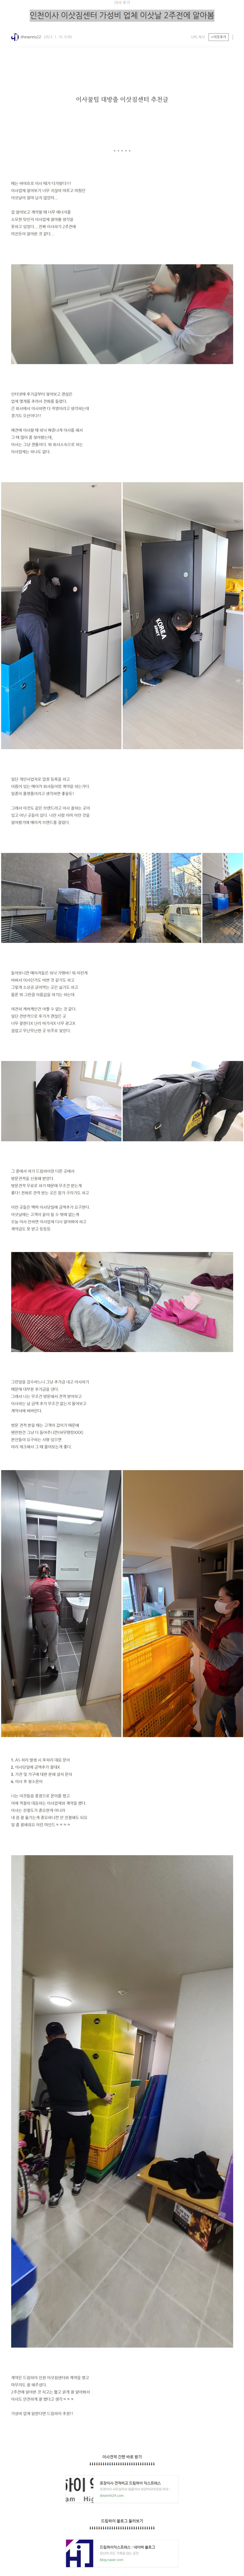 1월 16일 인천이사 이삿짐센터 가성비 업체 이삿날 2주전에 알아봄.JPG